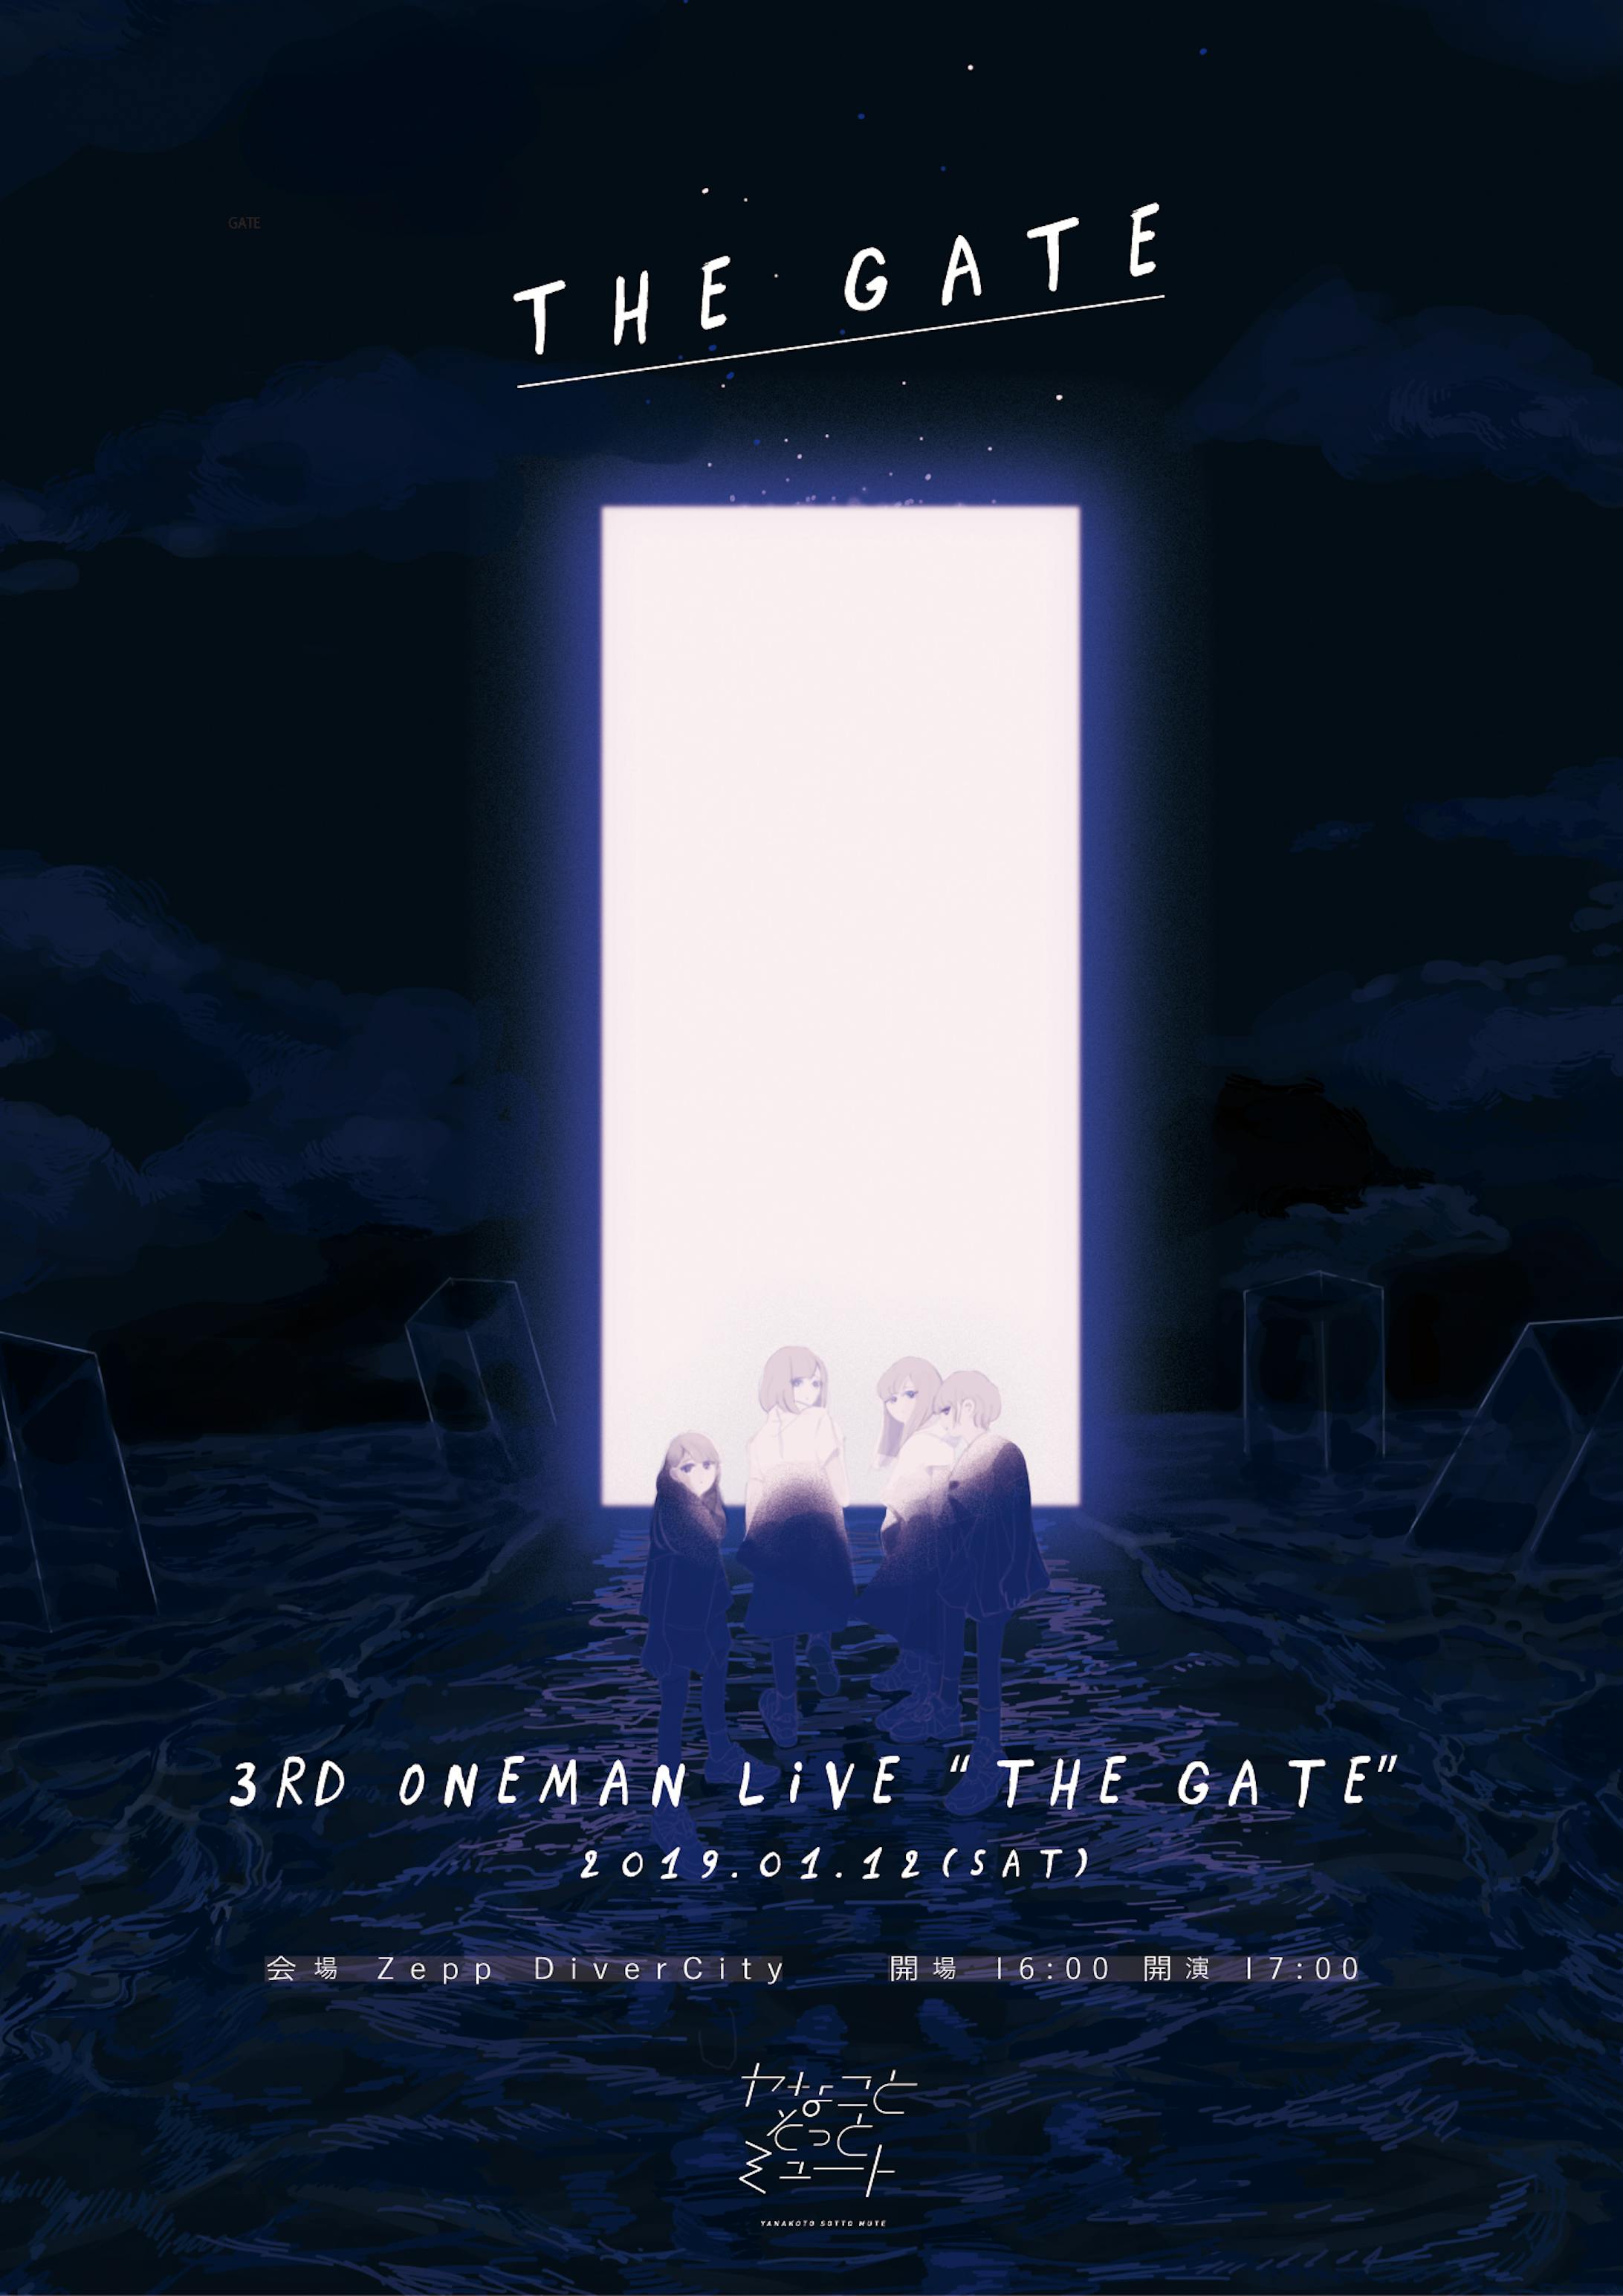 ヤなことそっとミュート 3rd oneman live "THE GATE" メインビジュアル-1